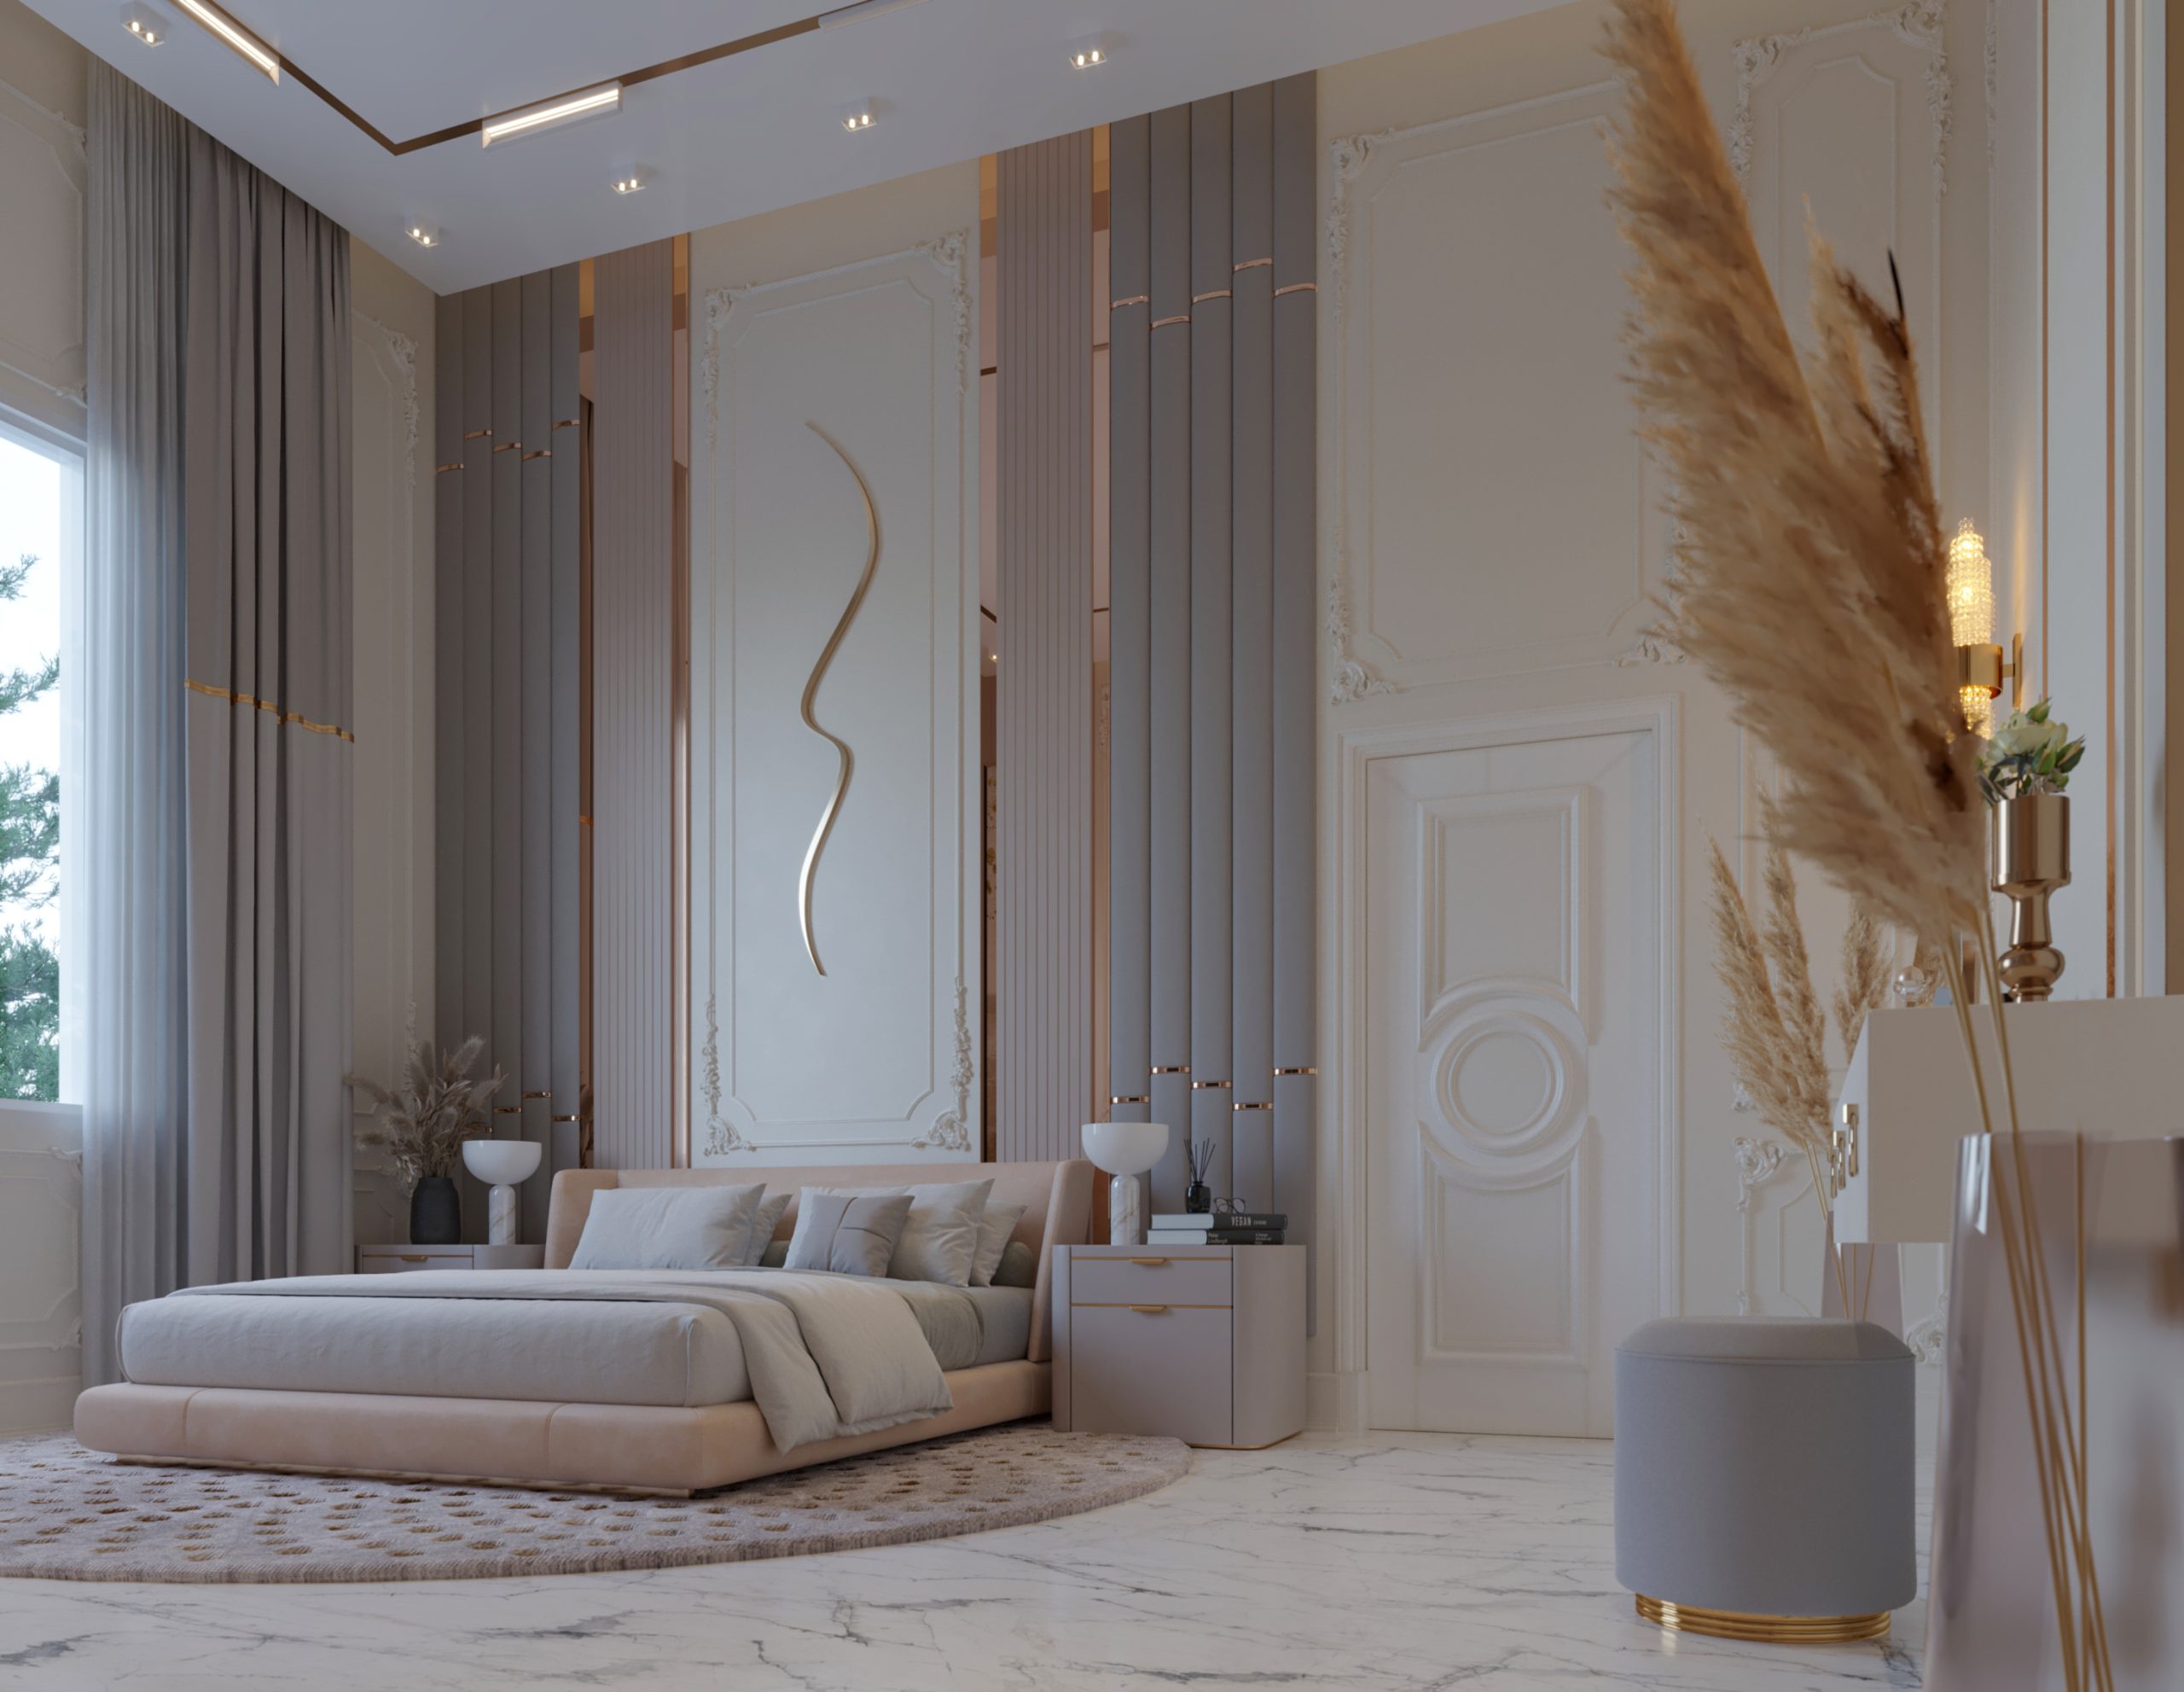 LUXURY BEDROOMS COLLECTION - bedroom design - luxury - metal design